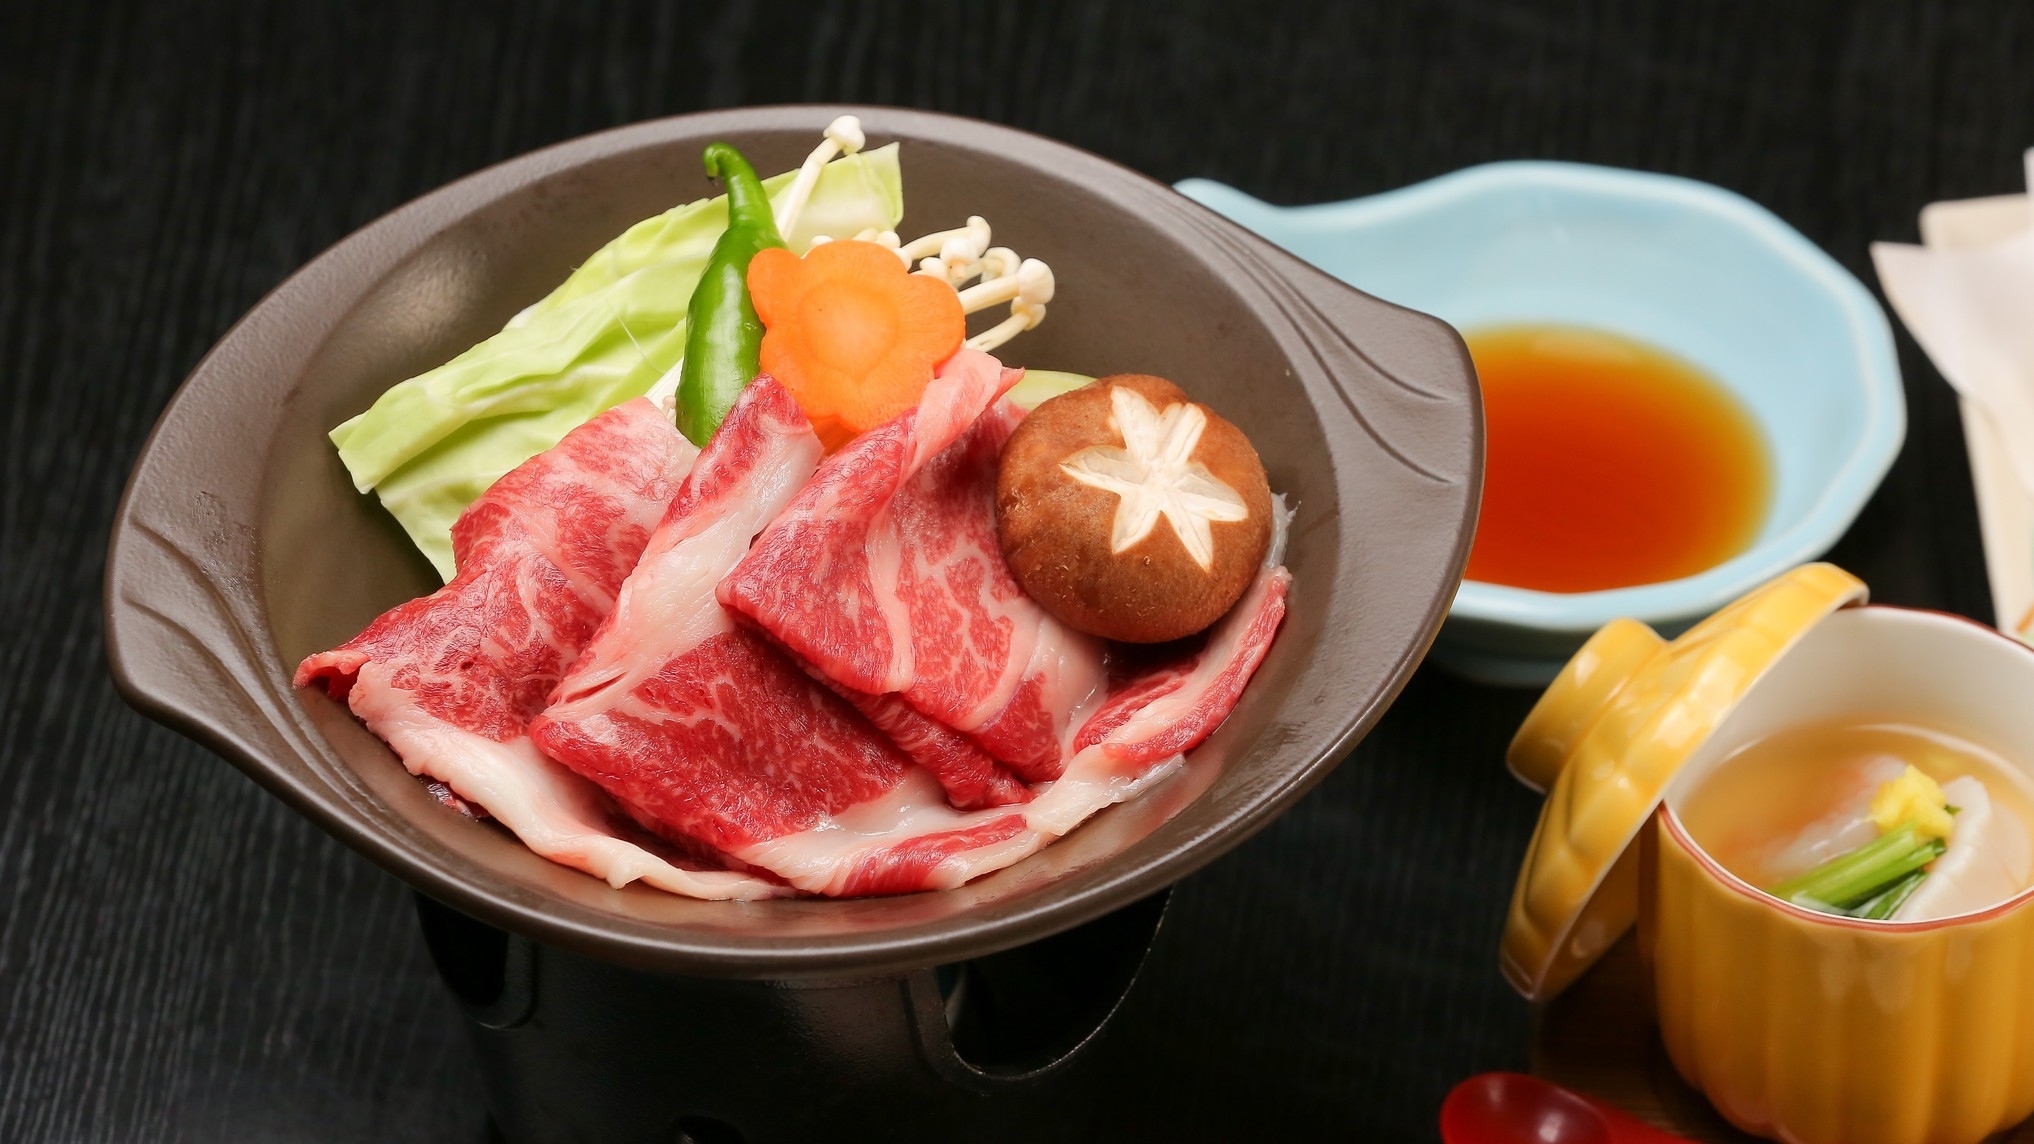 ■美味饗宴■『日本最高峰の皇帝牡蠣』+『にいがた和牛』☆板長渾身☆至極の膳☆心ゆくまでご堪能下さい